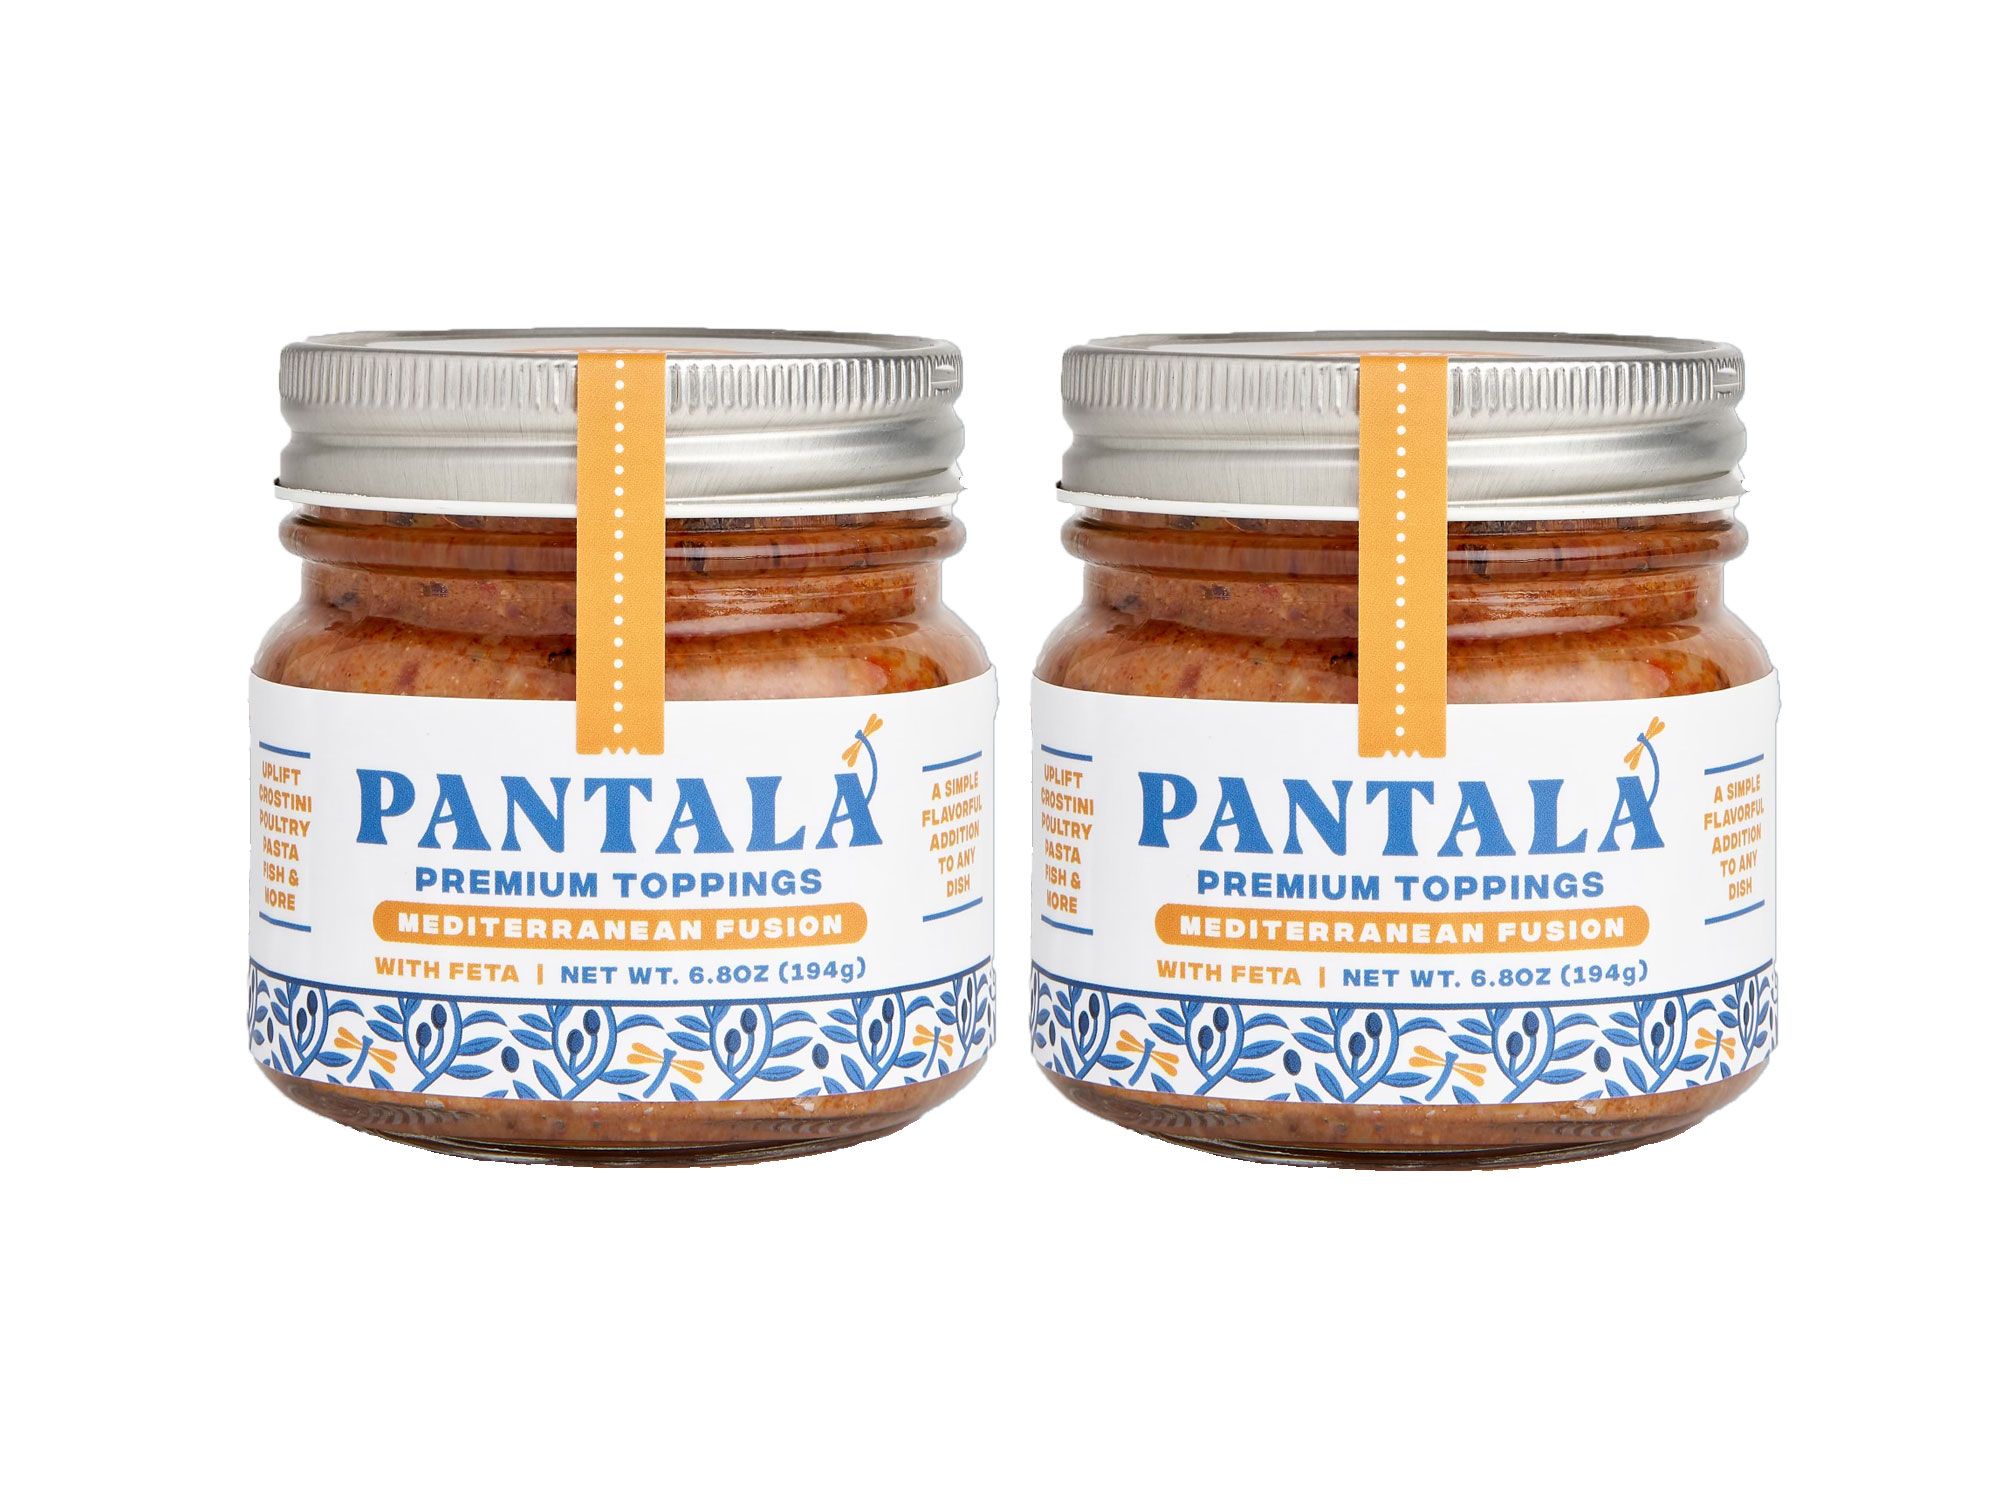 Pantala Mediterranean Fusion with Feta